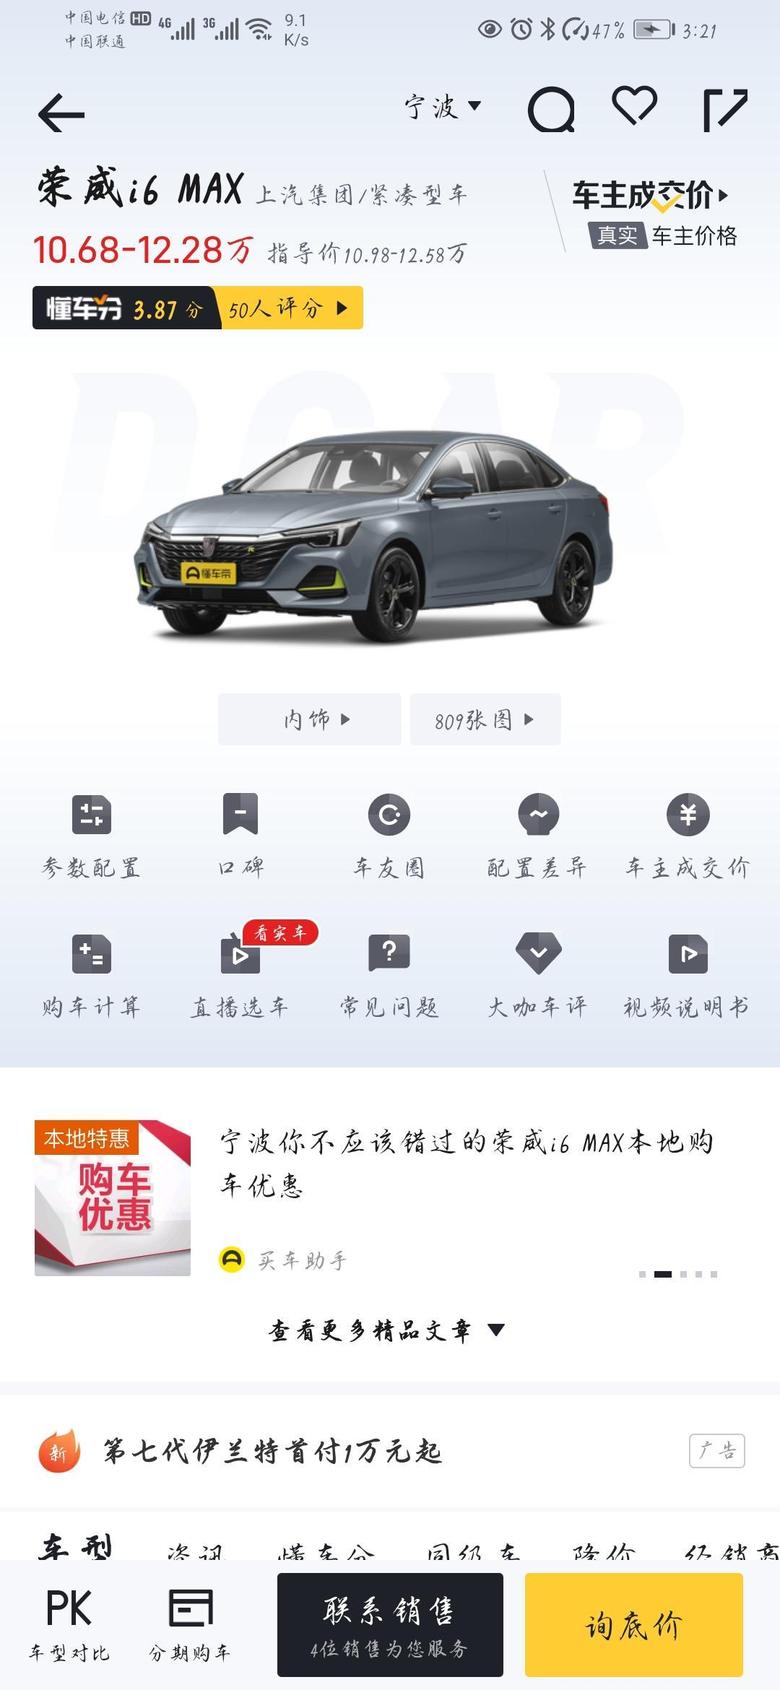 荣威i6 max 有没有在宁波买小6的，优惠幅度咋样，给俺说说，准备元旦左右去看车